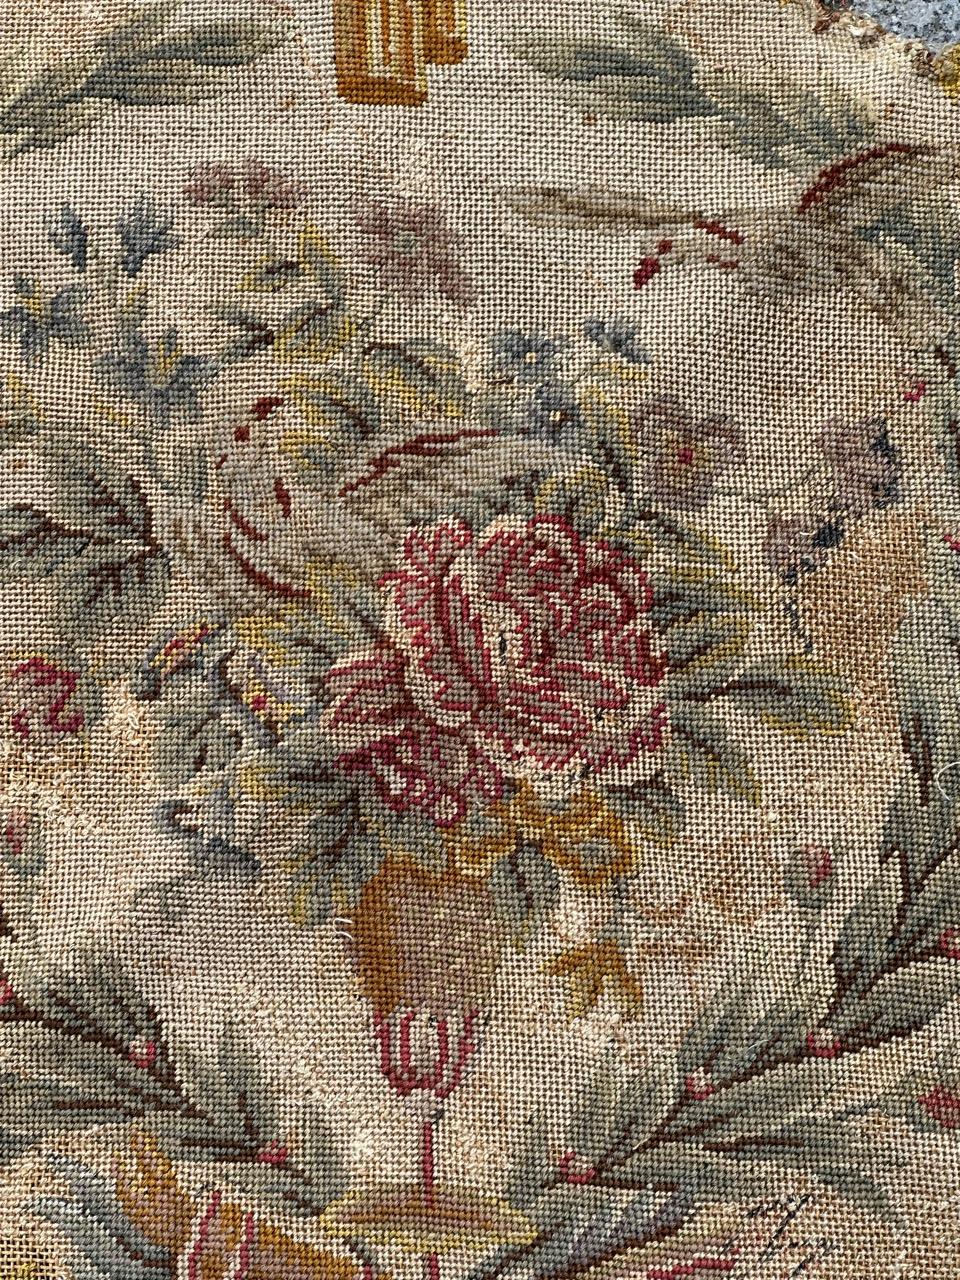 Exquise tapisserie à l'aiguille française de la fin du 19e siècle, provenant à l'origine d'une housse de chaise, mais pouvant également être utilisée pour des coussins ou des cadres. Ornée d'un captivant motif floral de l'époque Napoléon III, cette